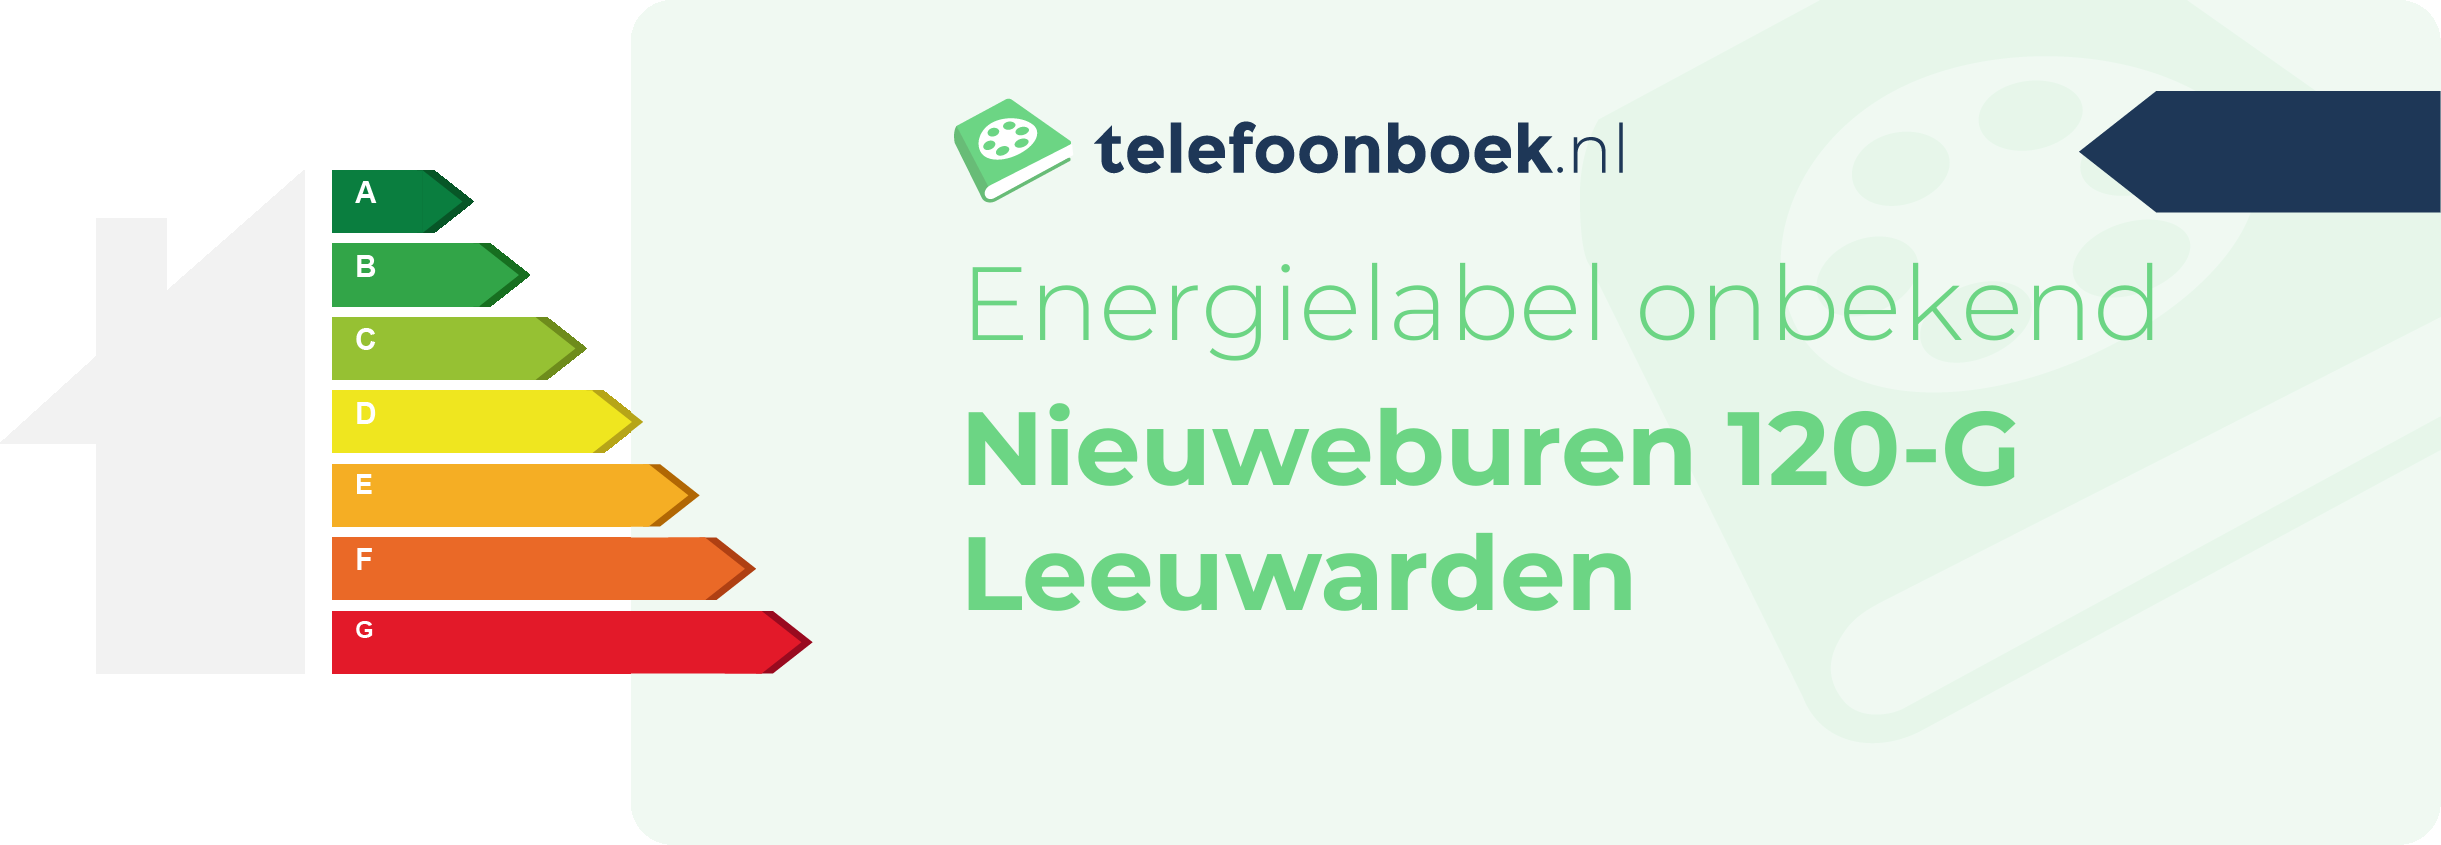 Energielabel Nieuweburen 120-G Leeuwarden